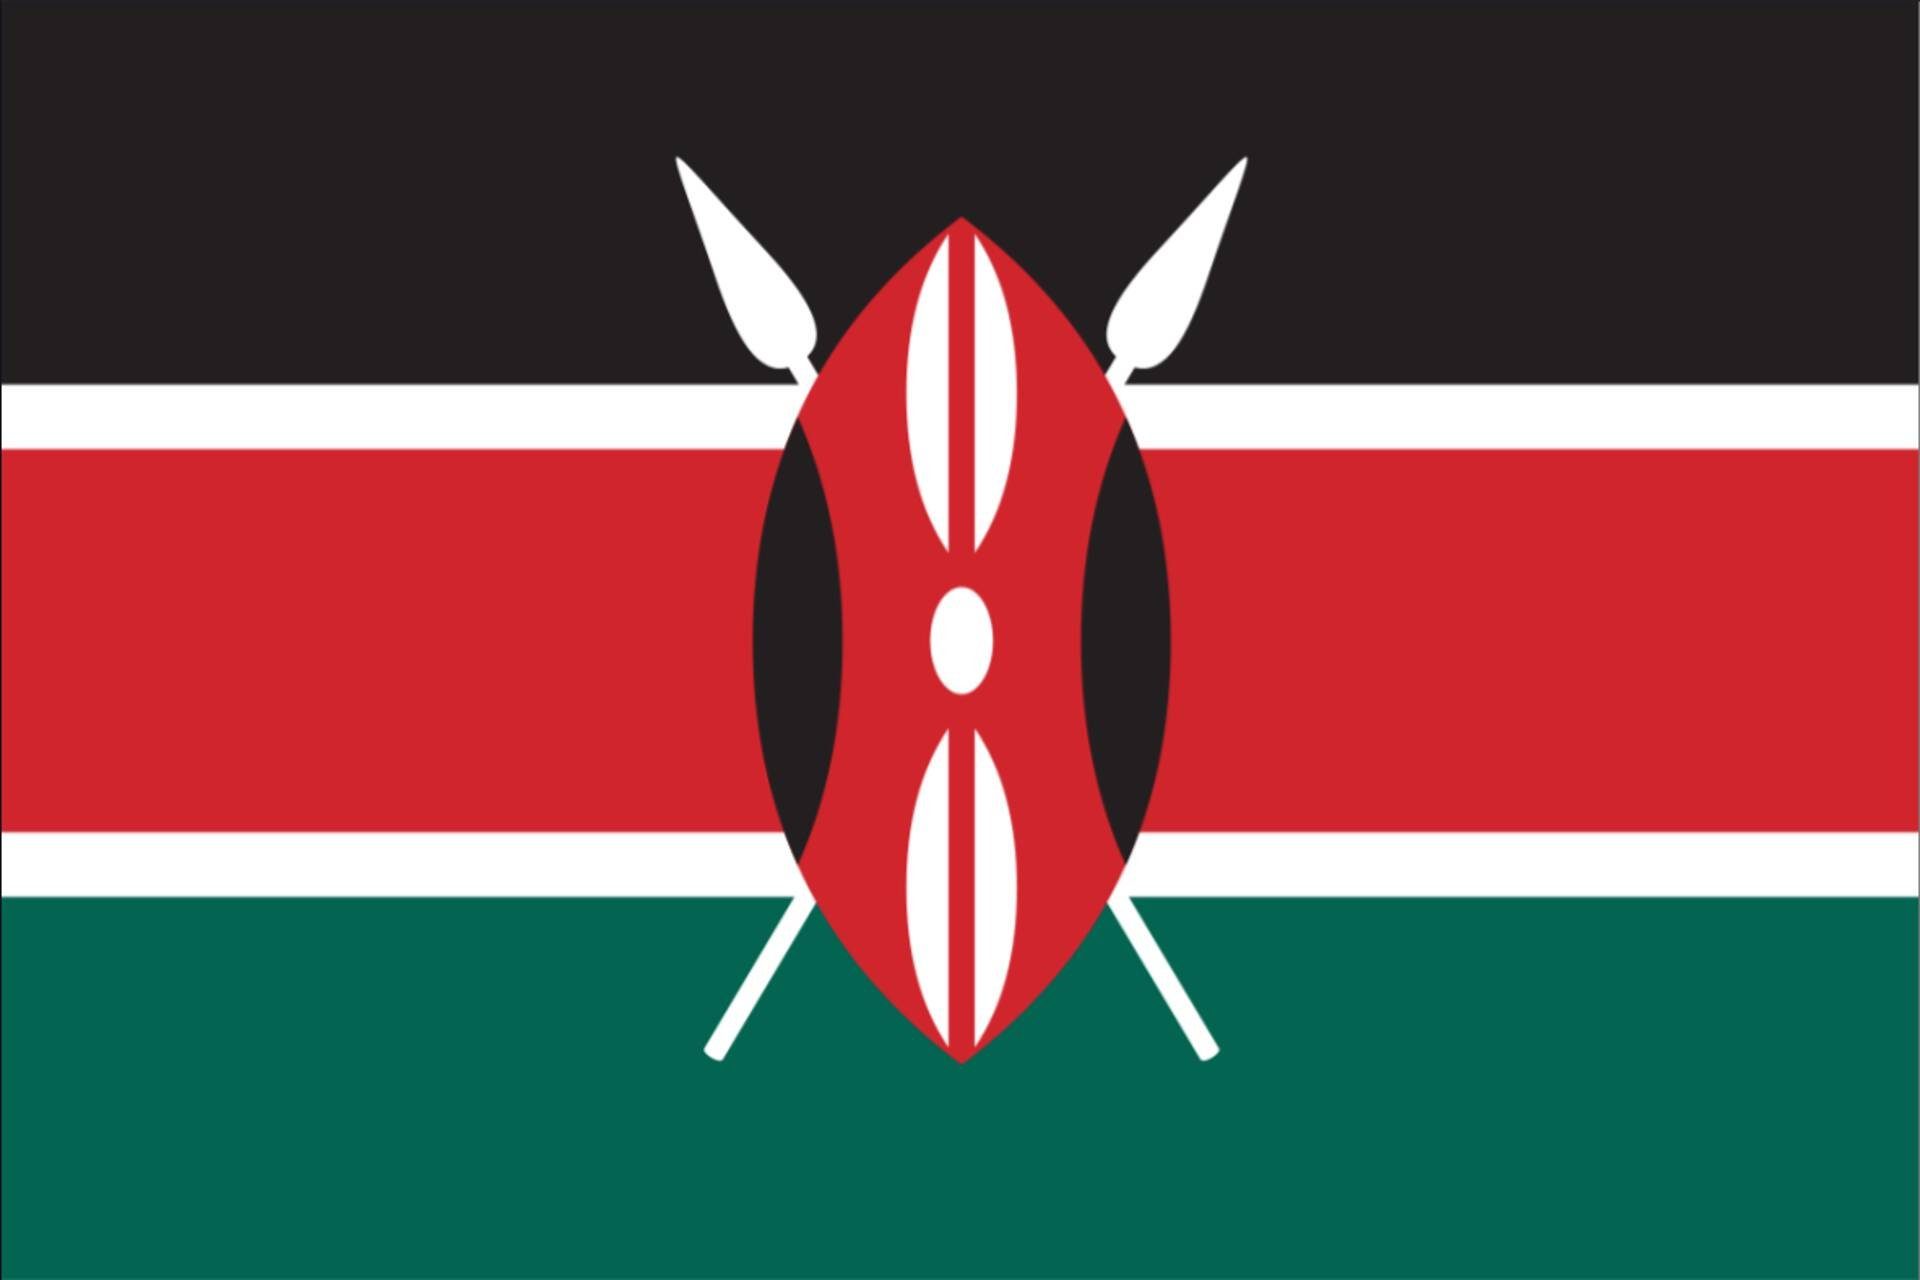 Flagge 80 Kenia flaggenmeer g/m²